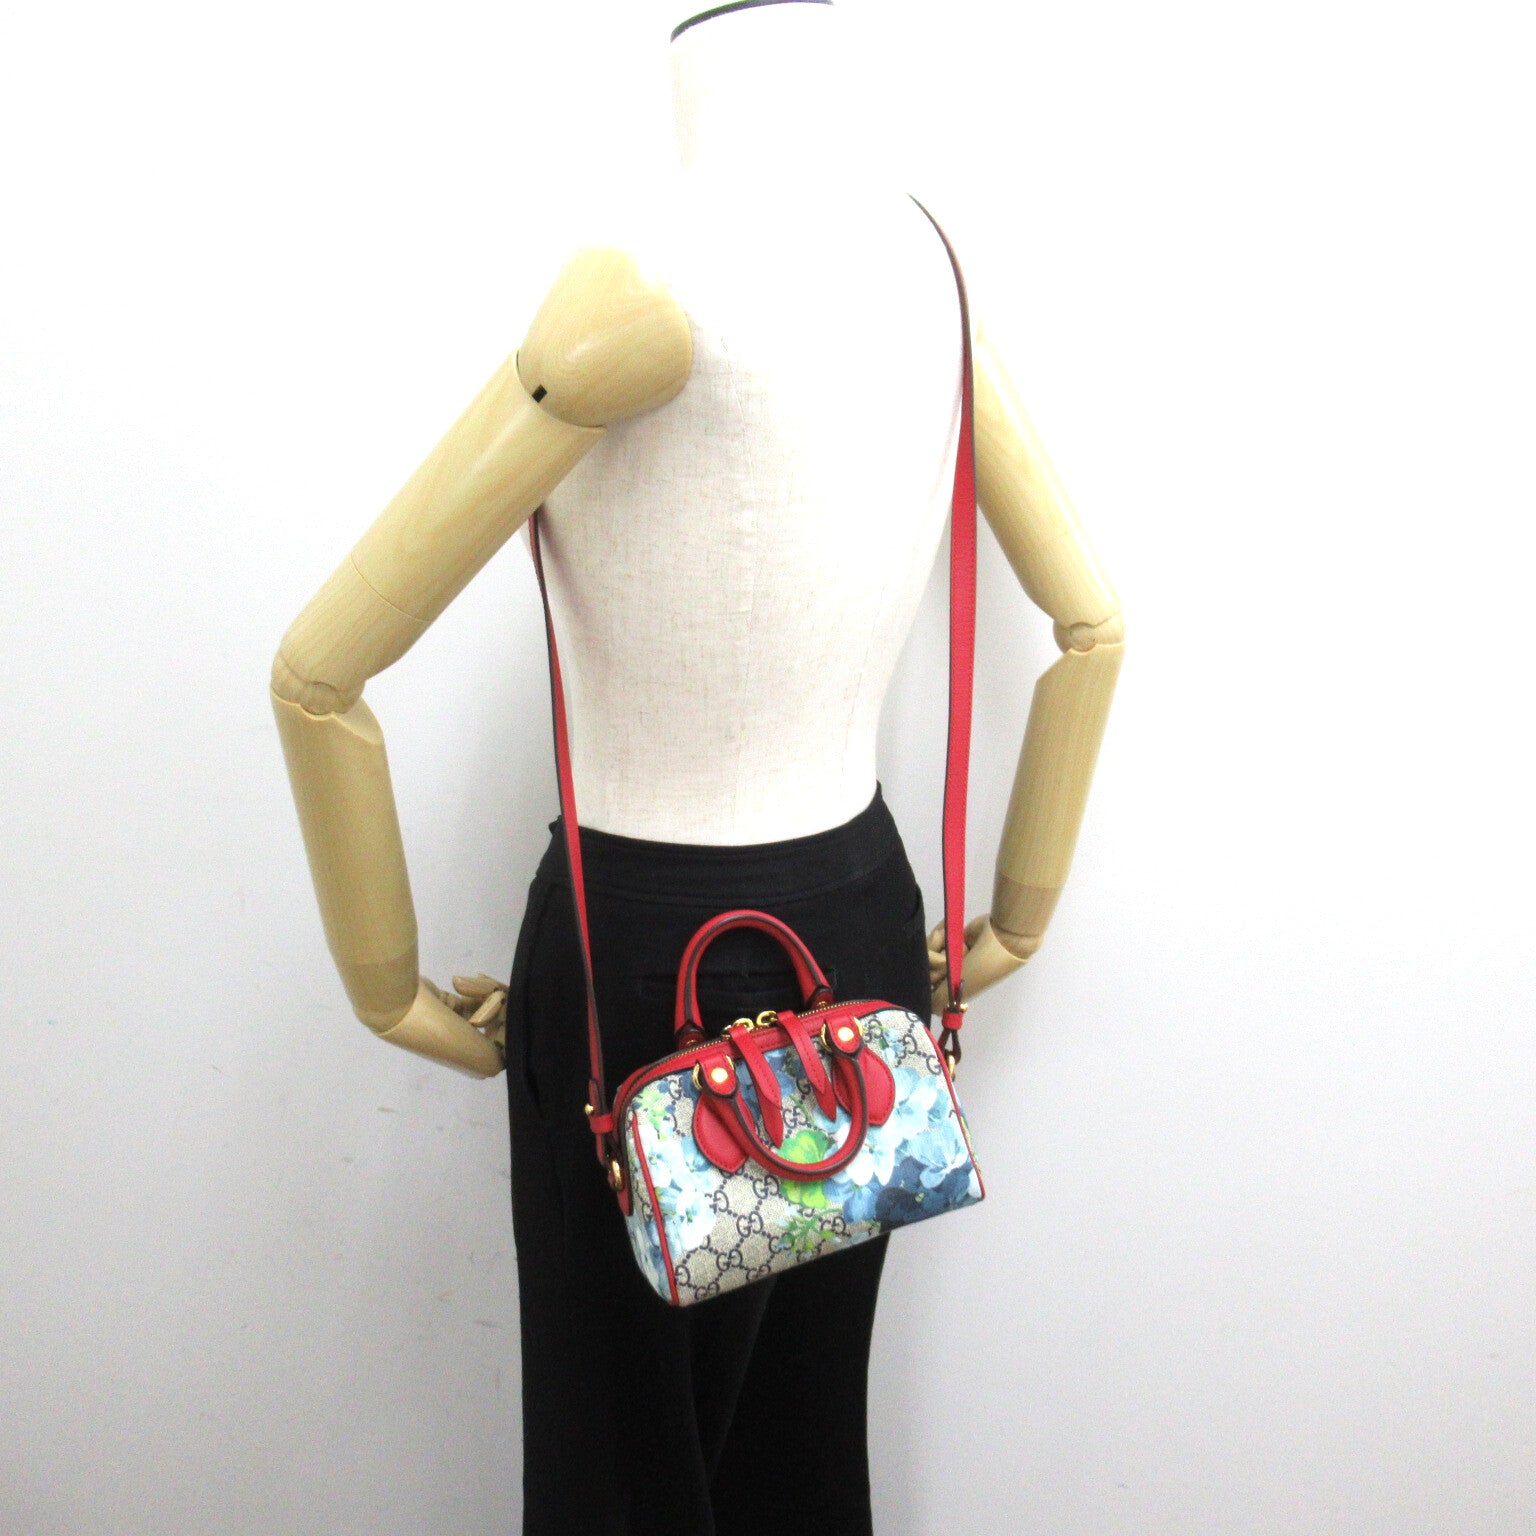 Gucci GG Bloom&#39;s Supreme 2w Shoulder Bag 2way Shoulder Bag PVC Coated Canvas  Navy  / Red Series 546312